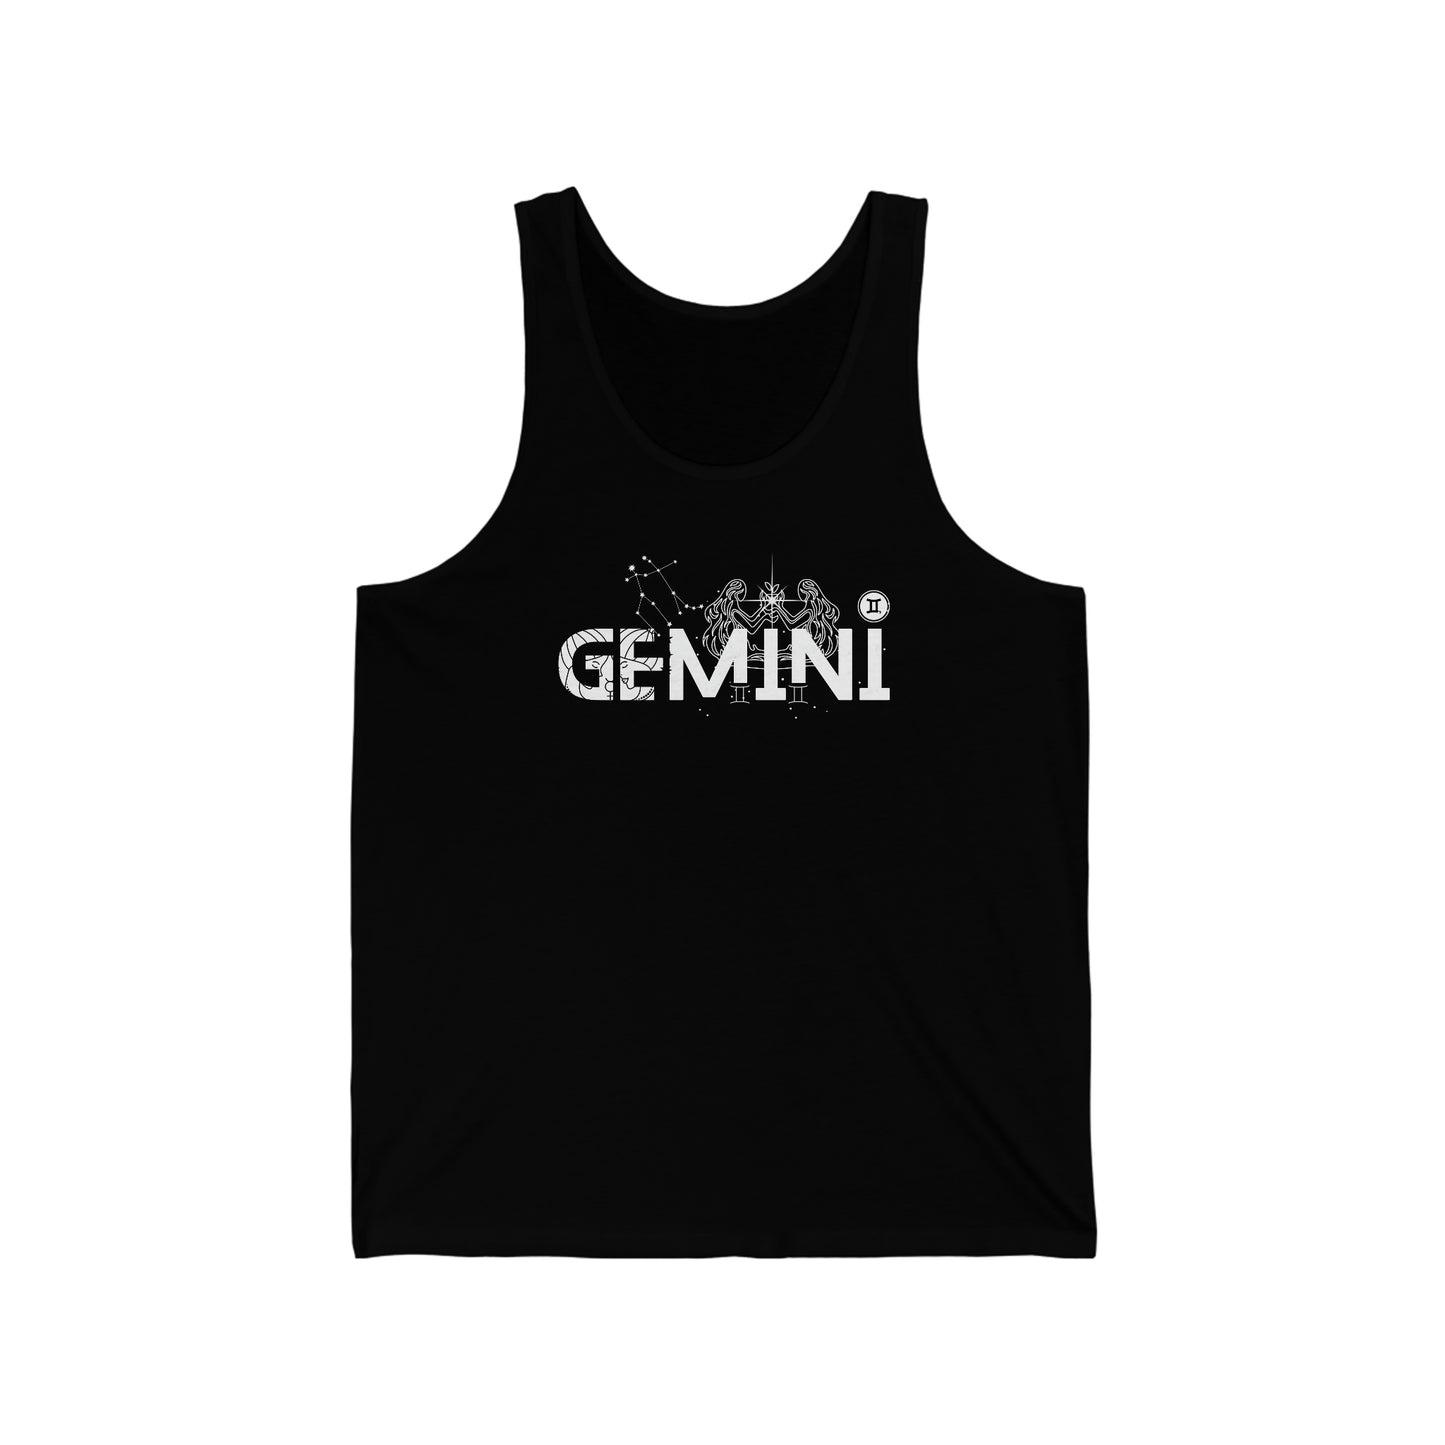 Gemini Tank